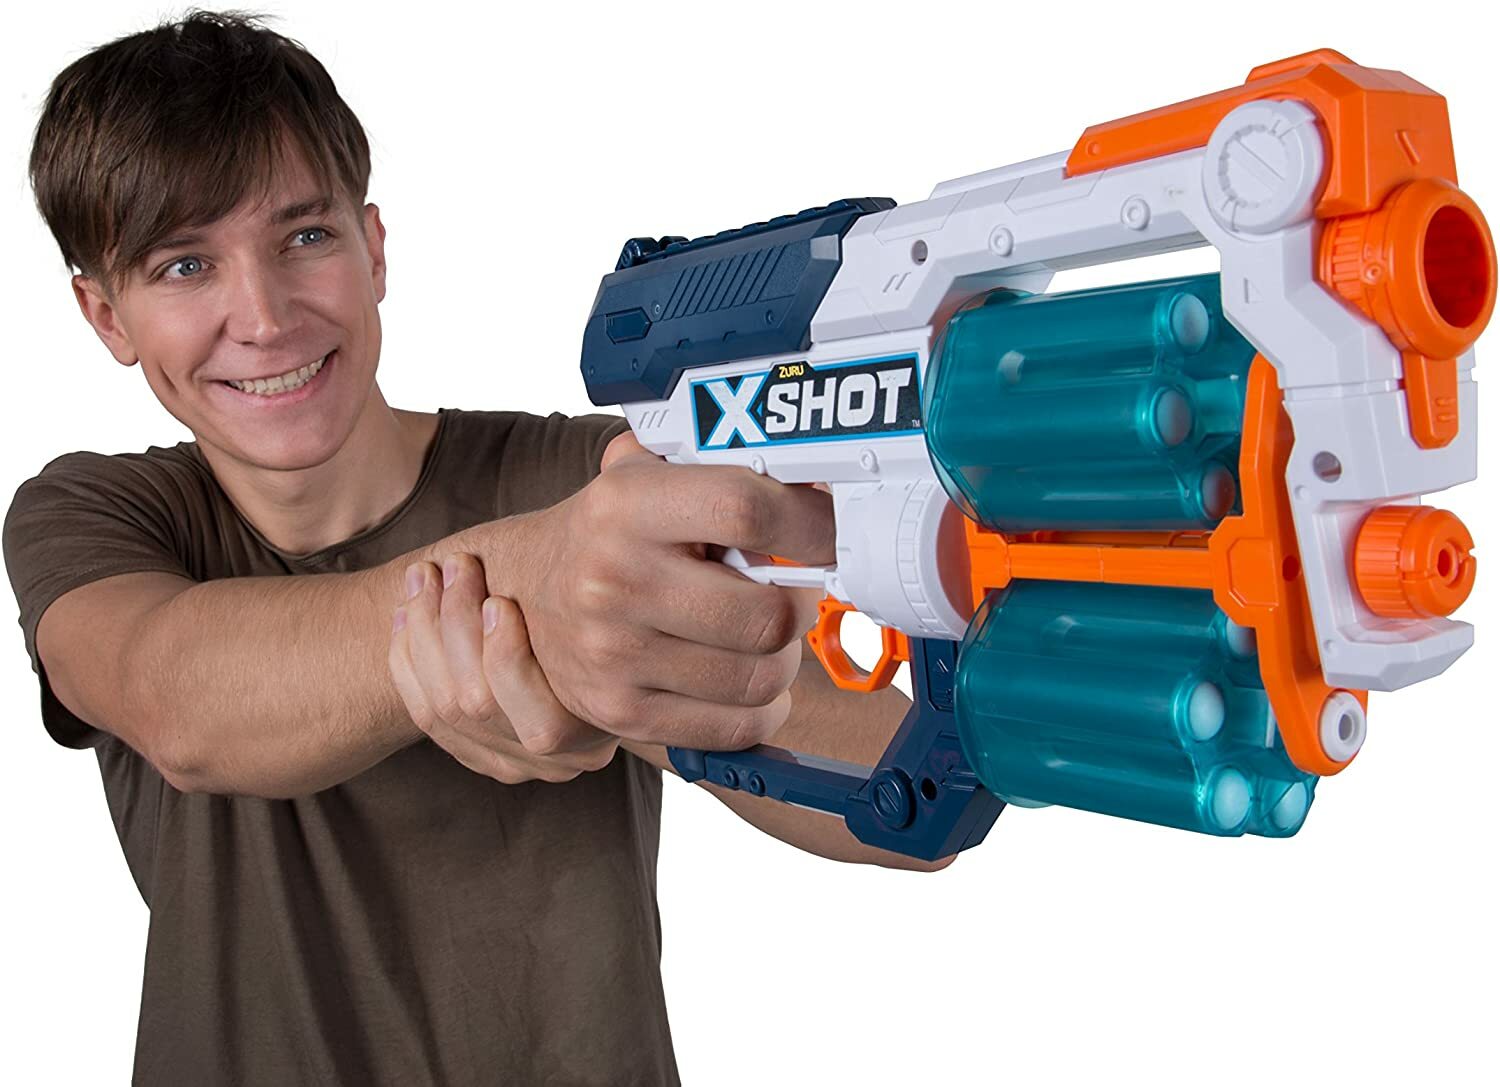 Zabawki X-SHOT